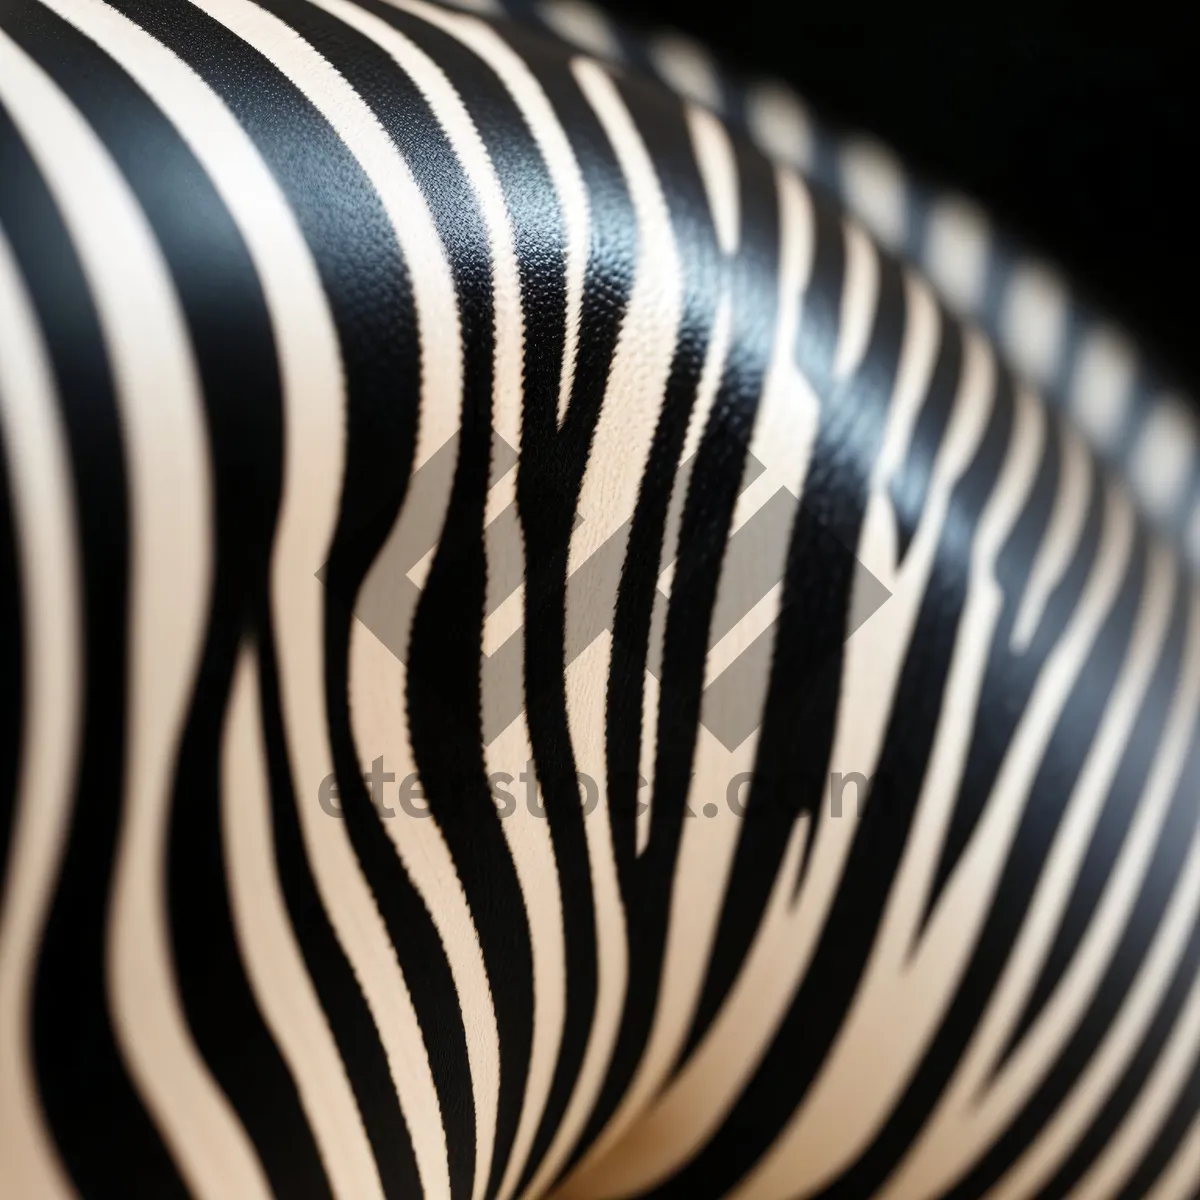 Picture of Zebra-patterned Coil Spring Device in Black Safari